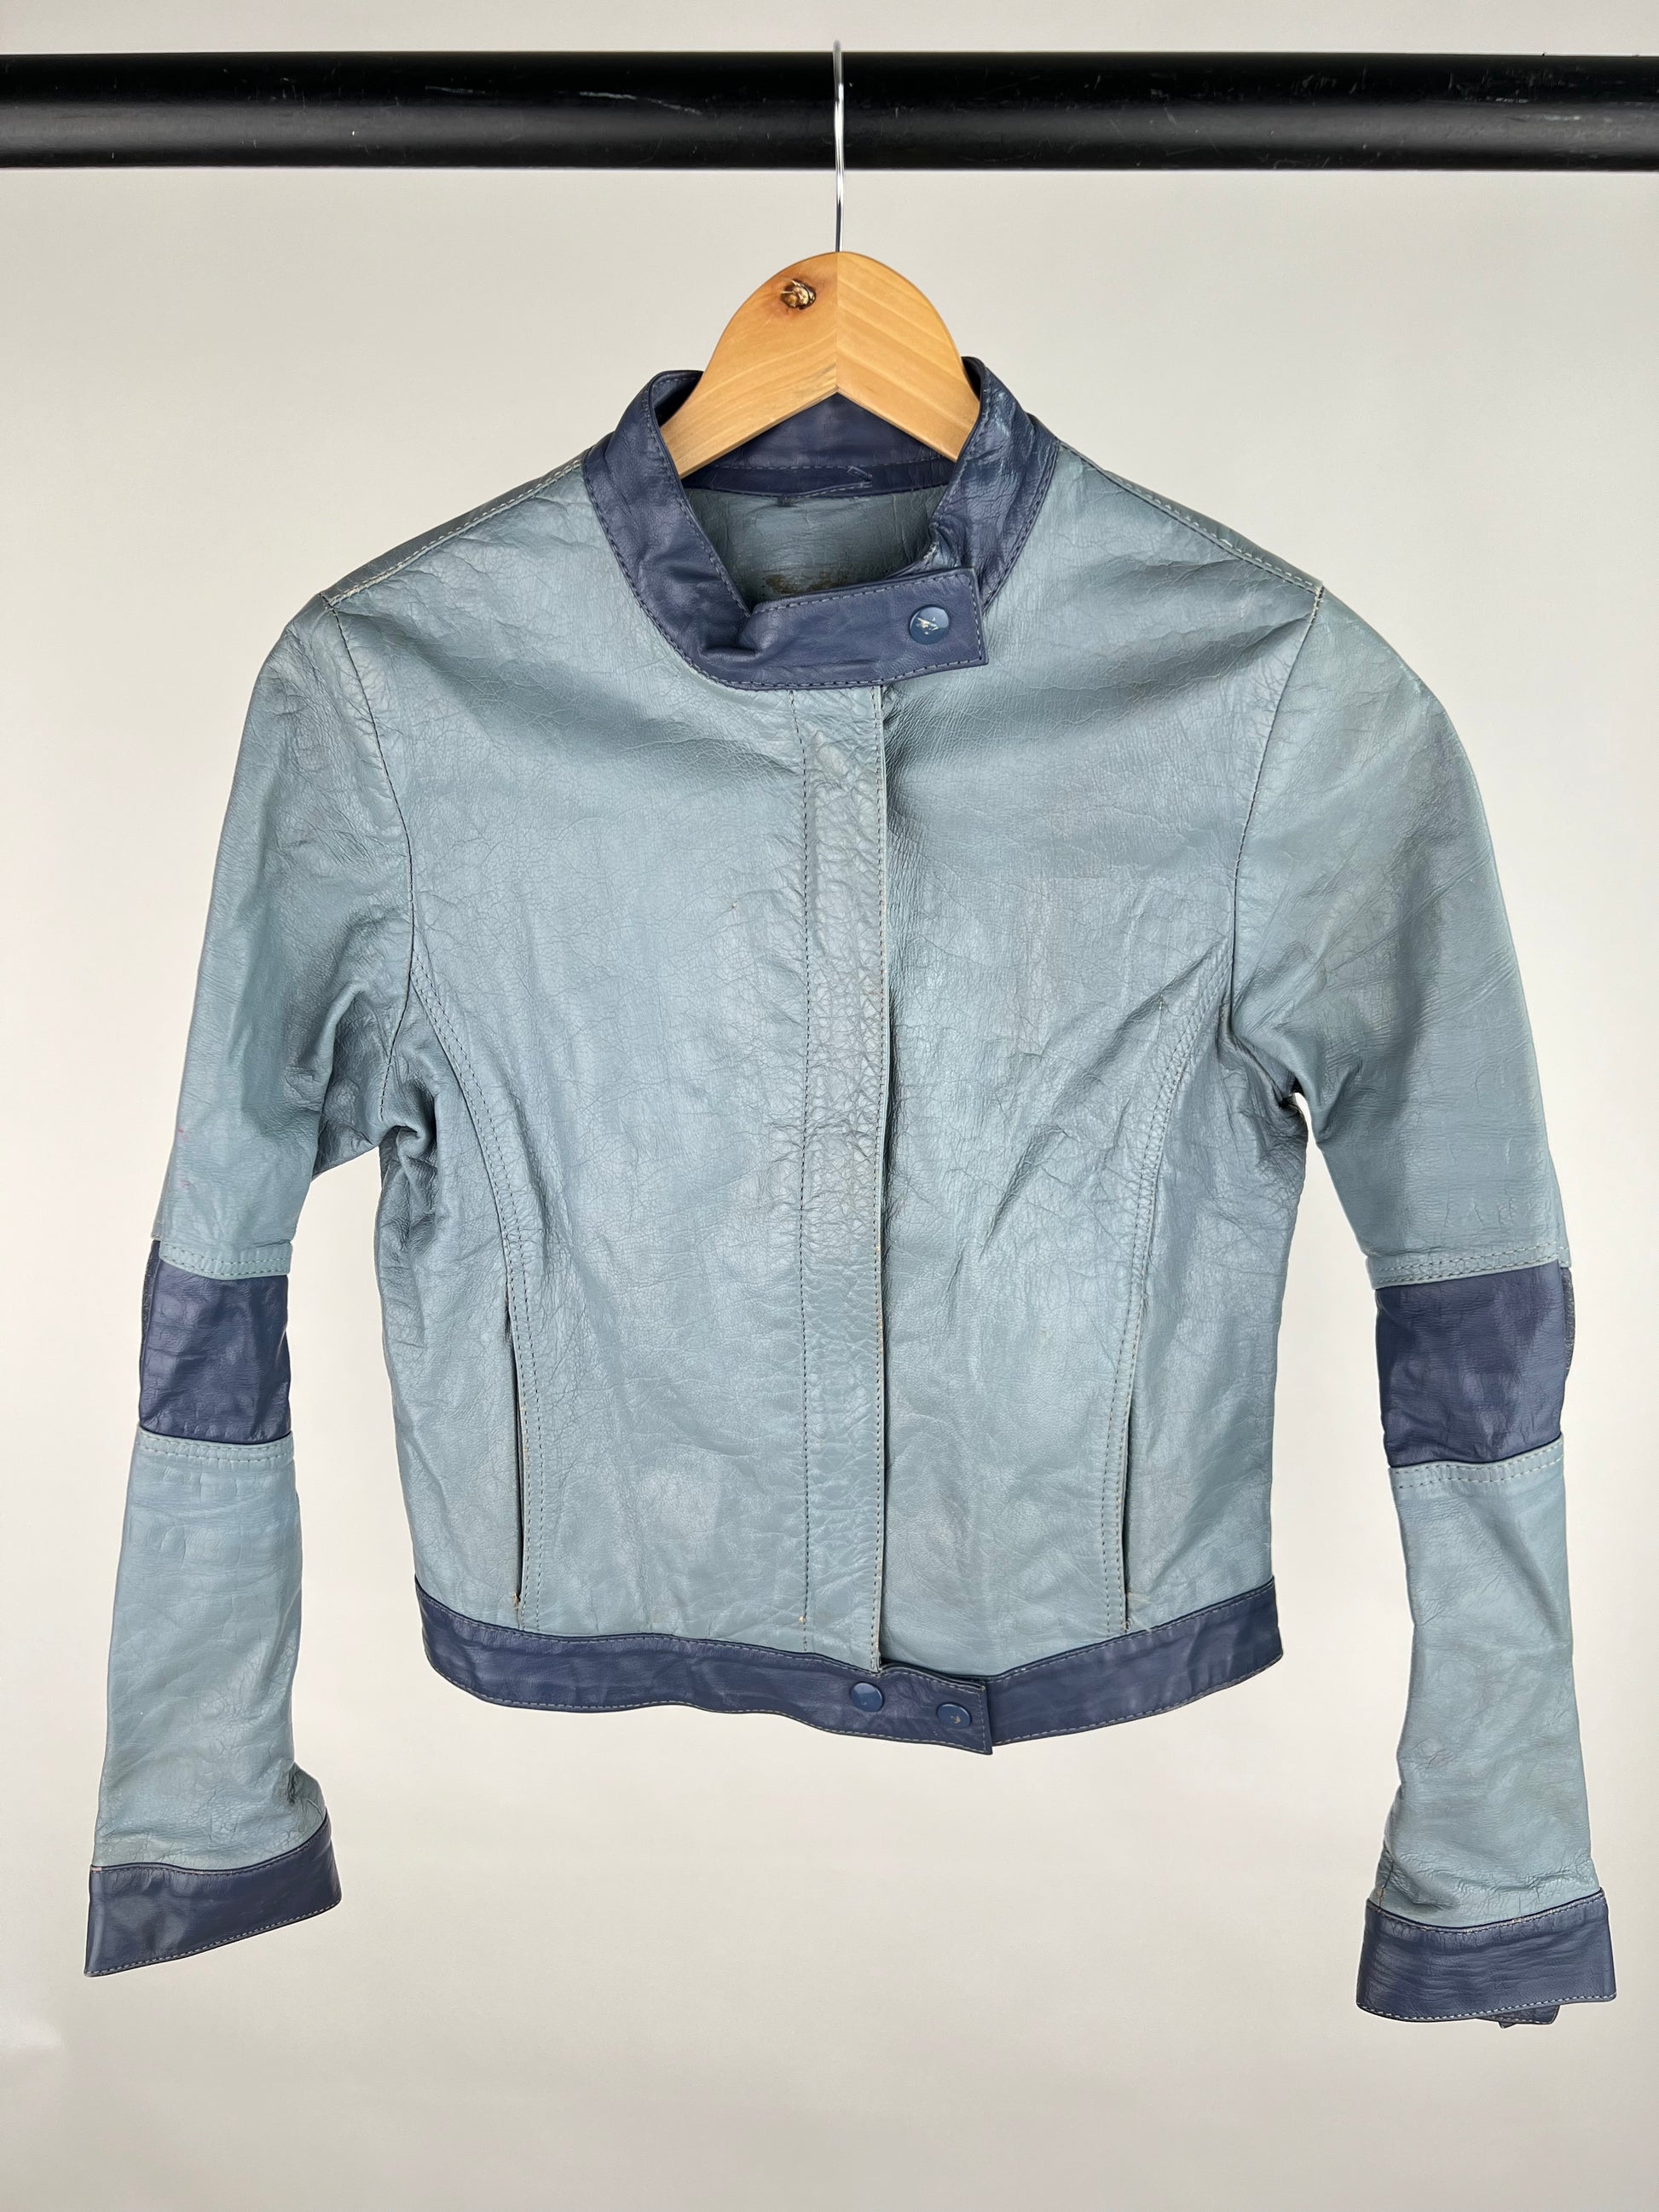 Vintage 90s Two Tone Leather Biker Jacket – Skux Vintage